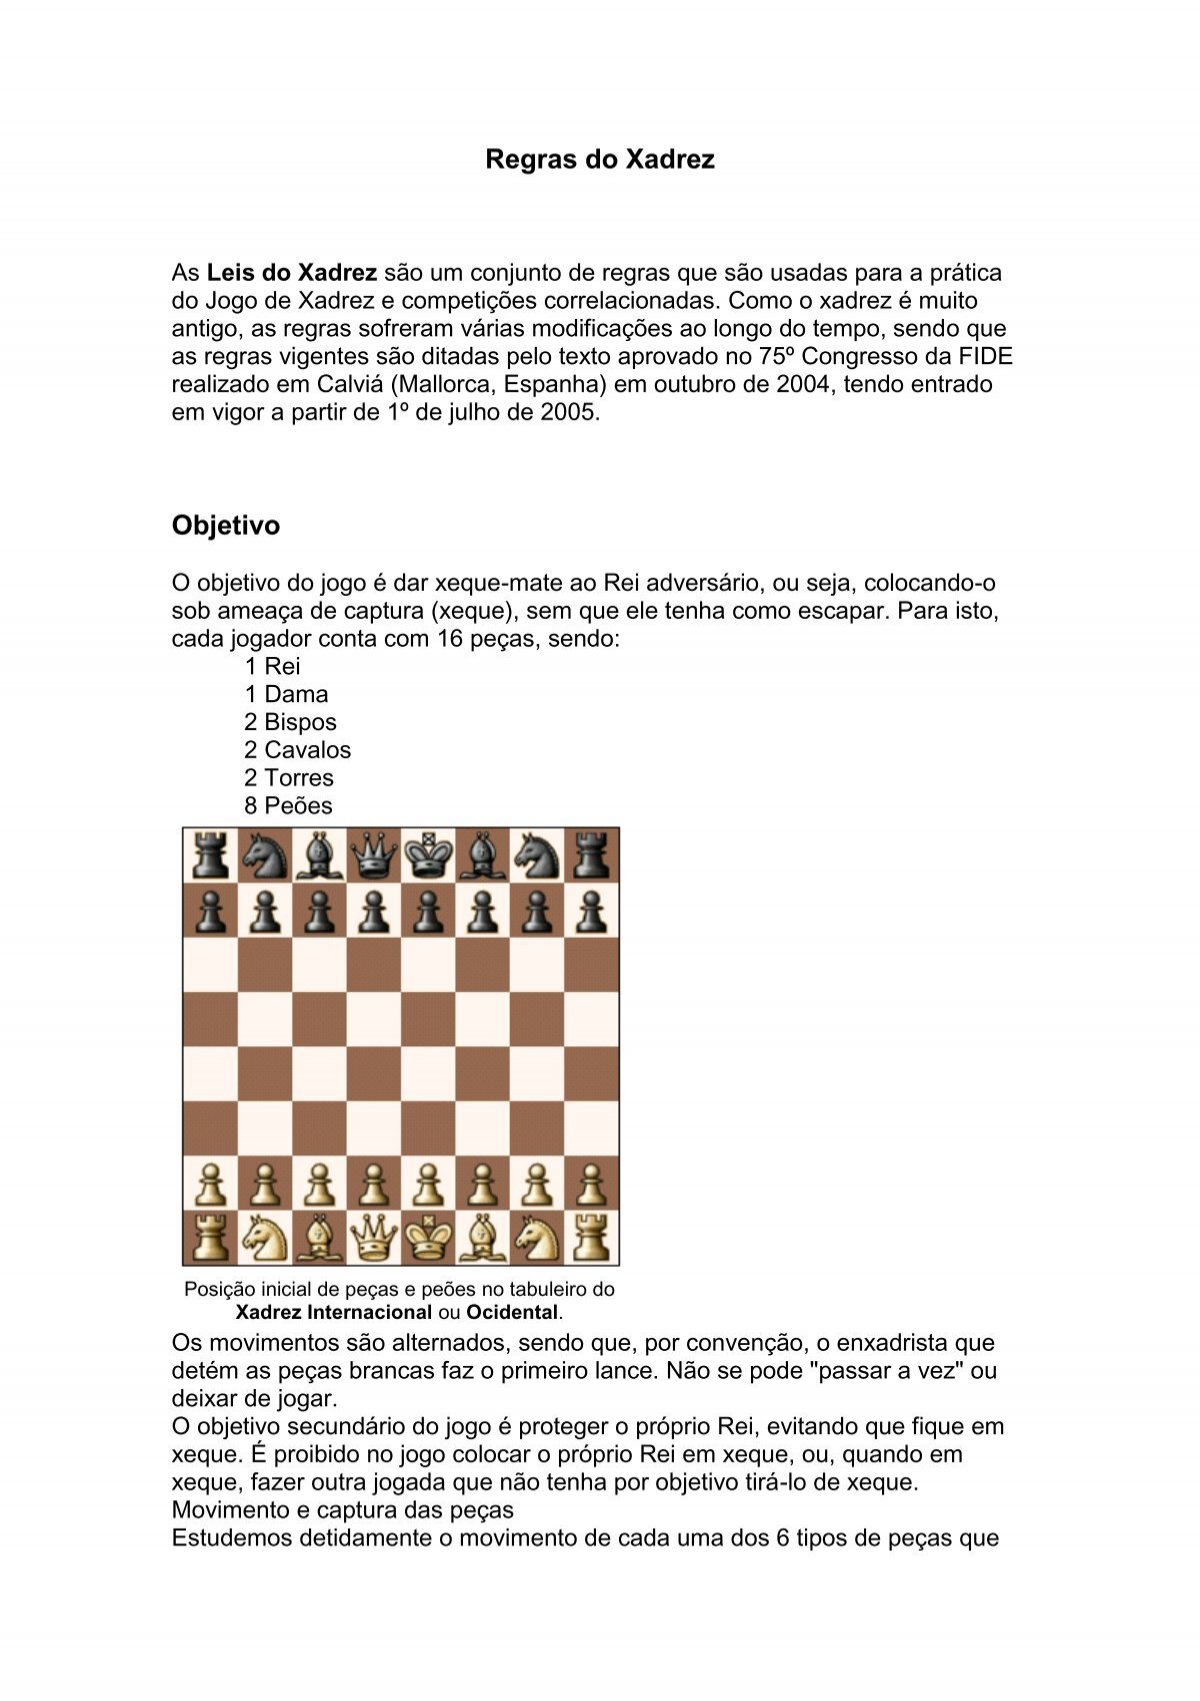 Xadrez: Tática, Estratégia, Fatos, Curiosidades, etc.: O movimento das  peças de xadrez: a DAMA